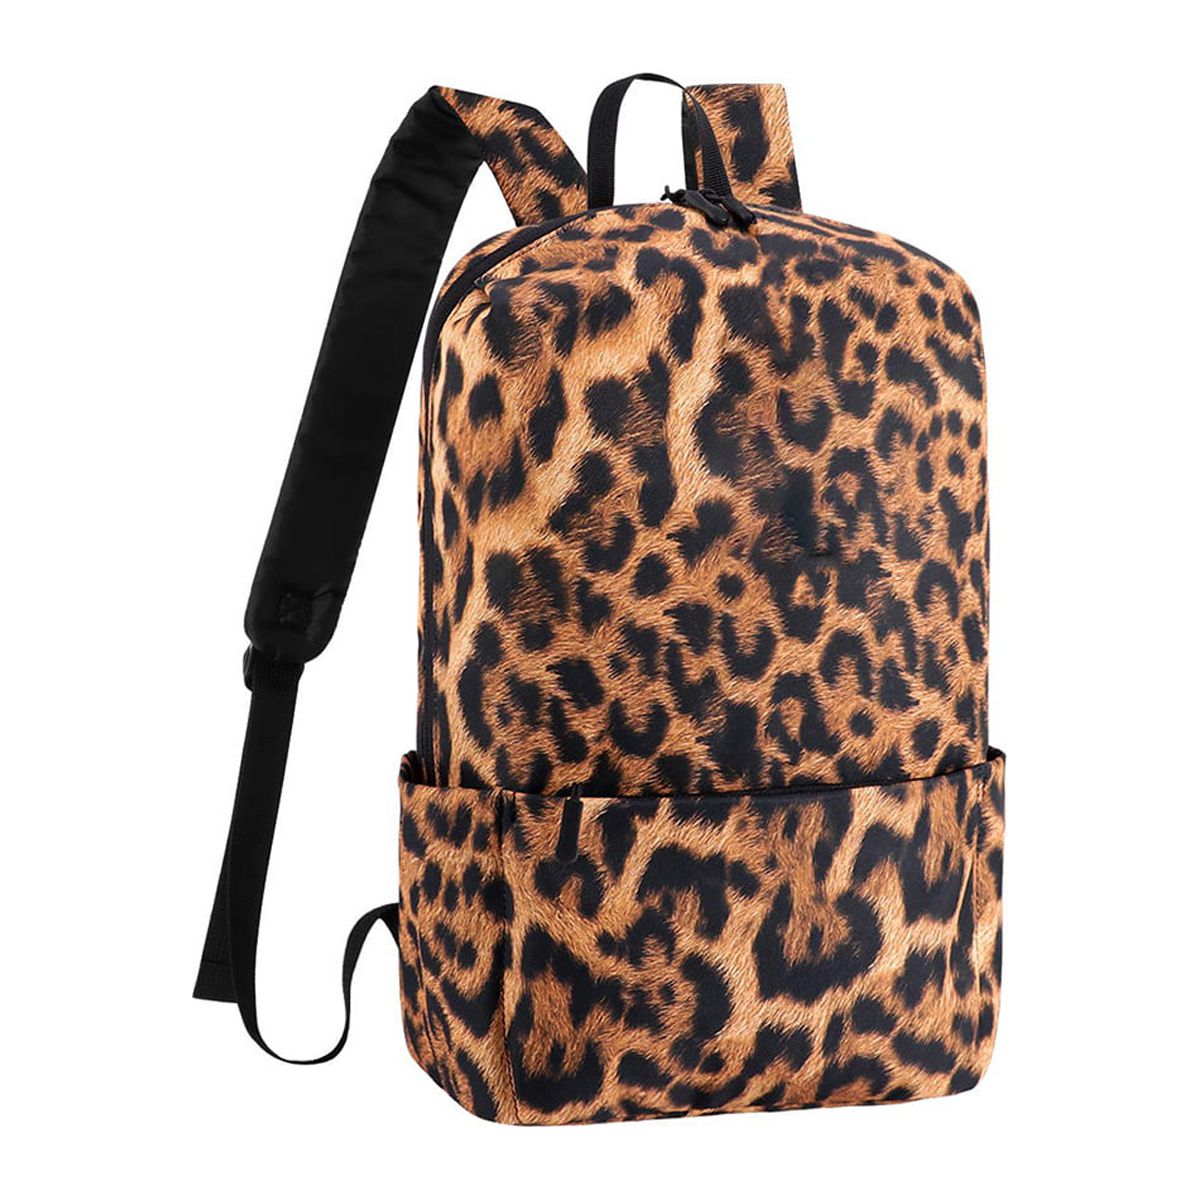 HAWEE Mini Backpack Purse Small Travel Backpack Sling Lightweight Shoulder Bag Daypack for Women & Men - image 1 of 7